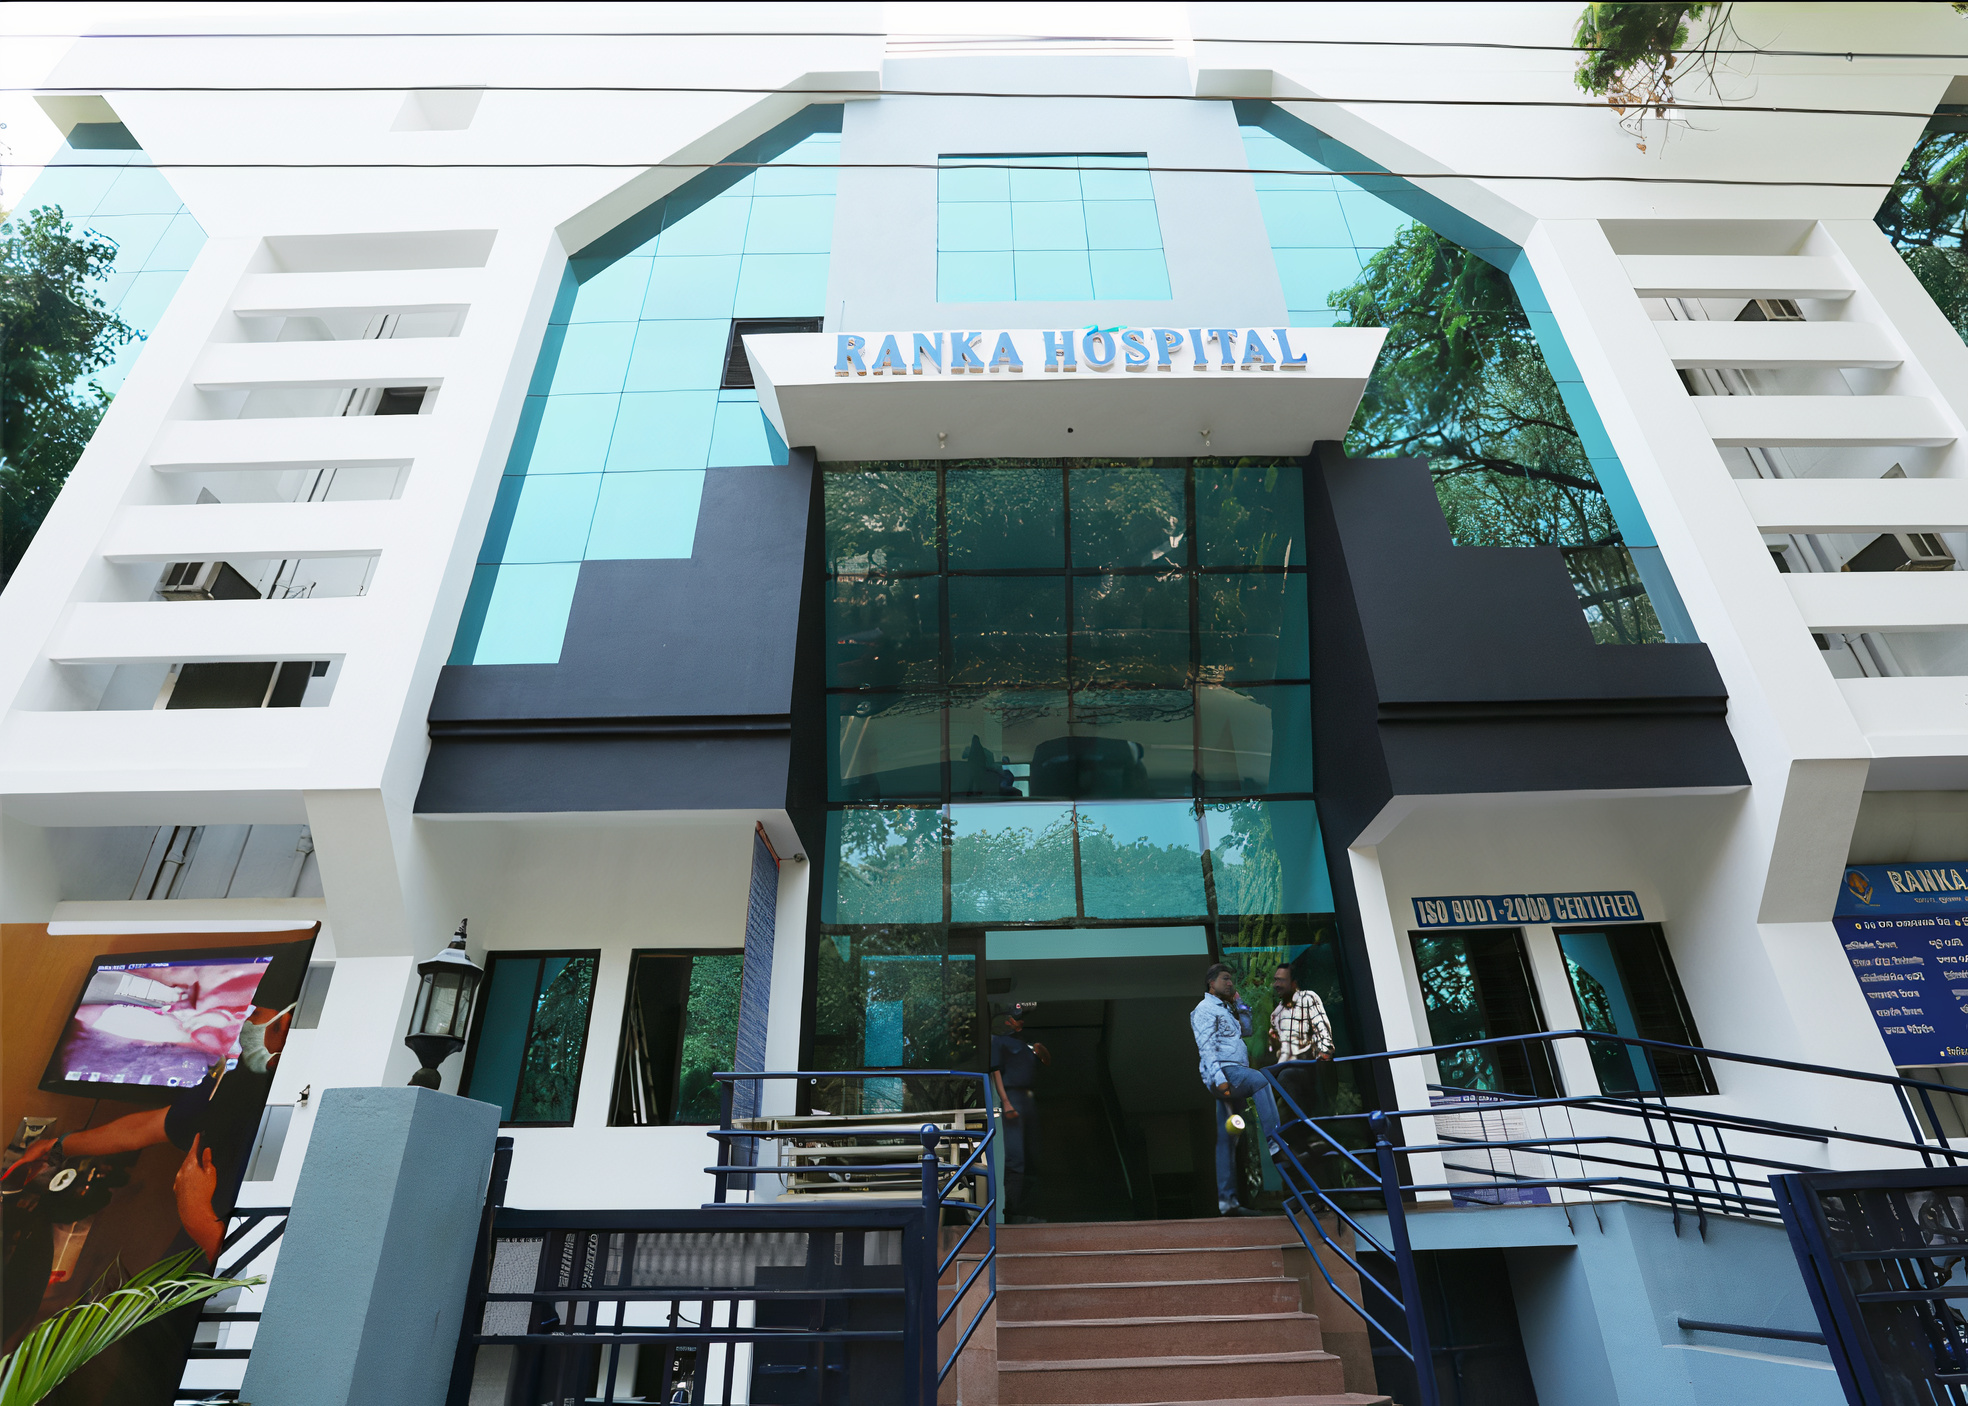 Ranka Hospital photo